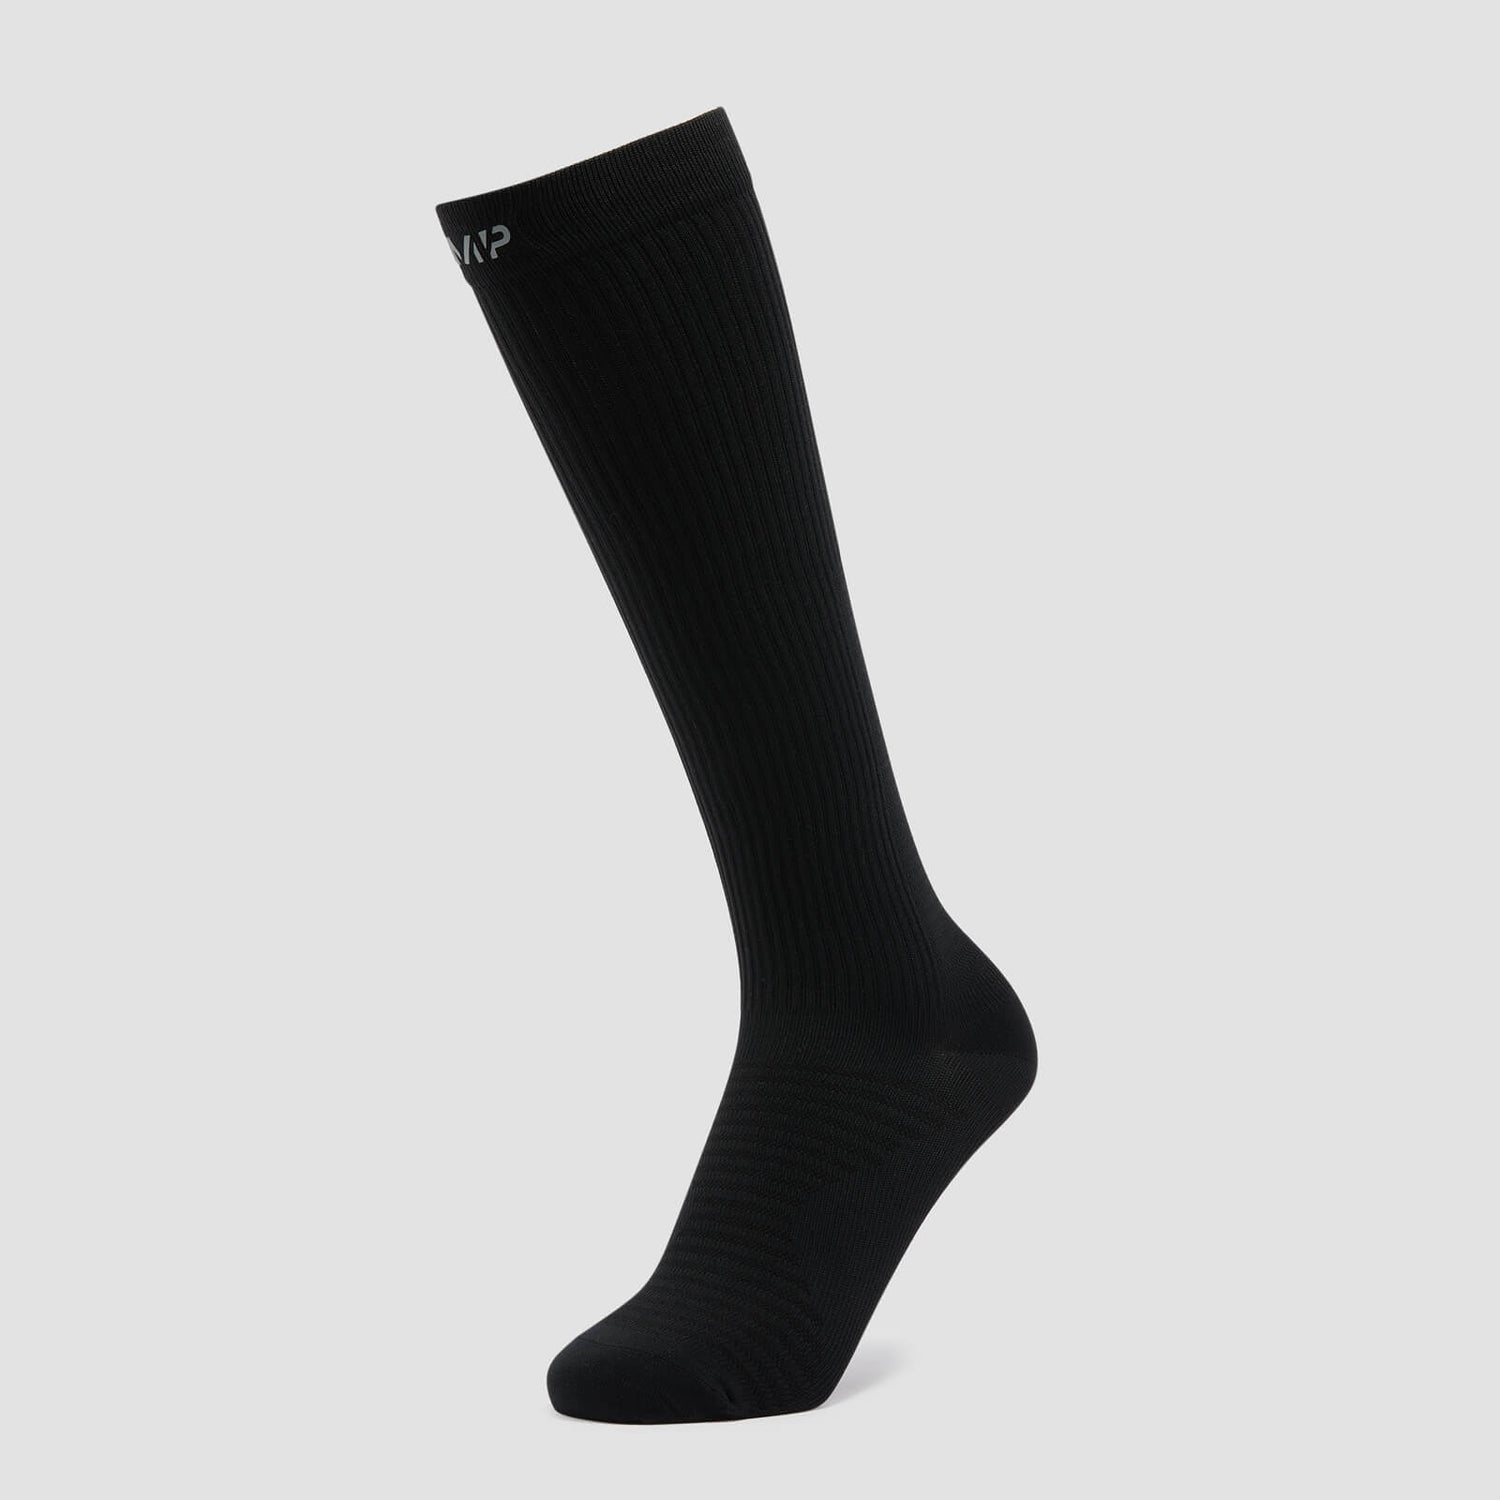 Športové lýtkové ponožky MP – čierne - UK 2-5